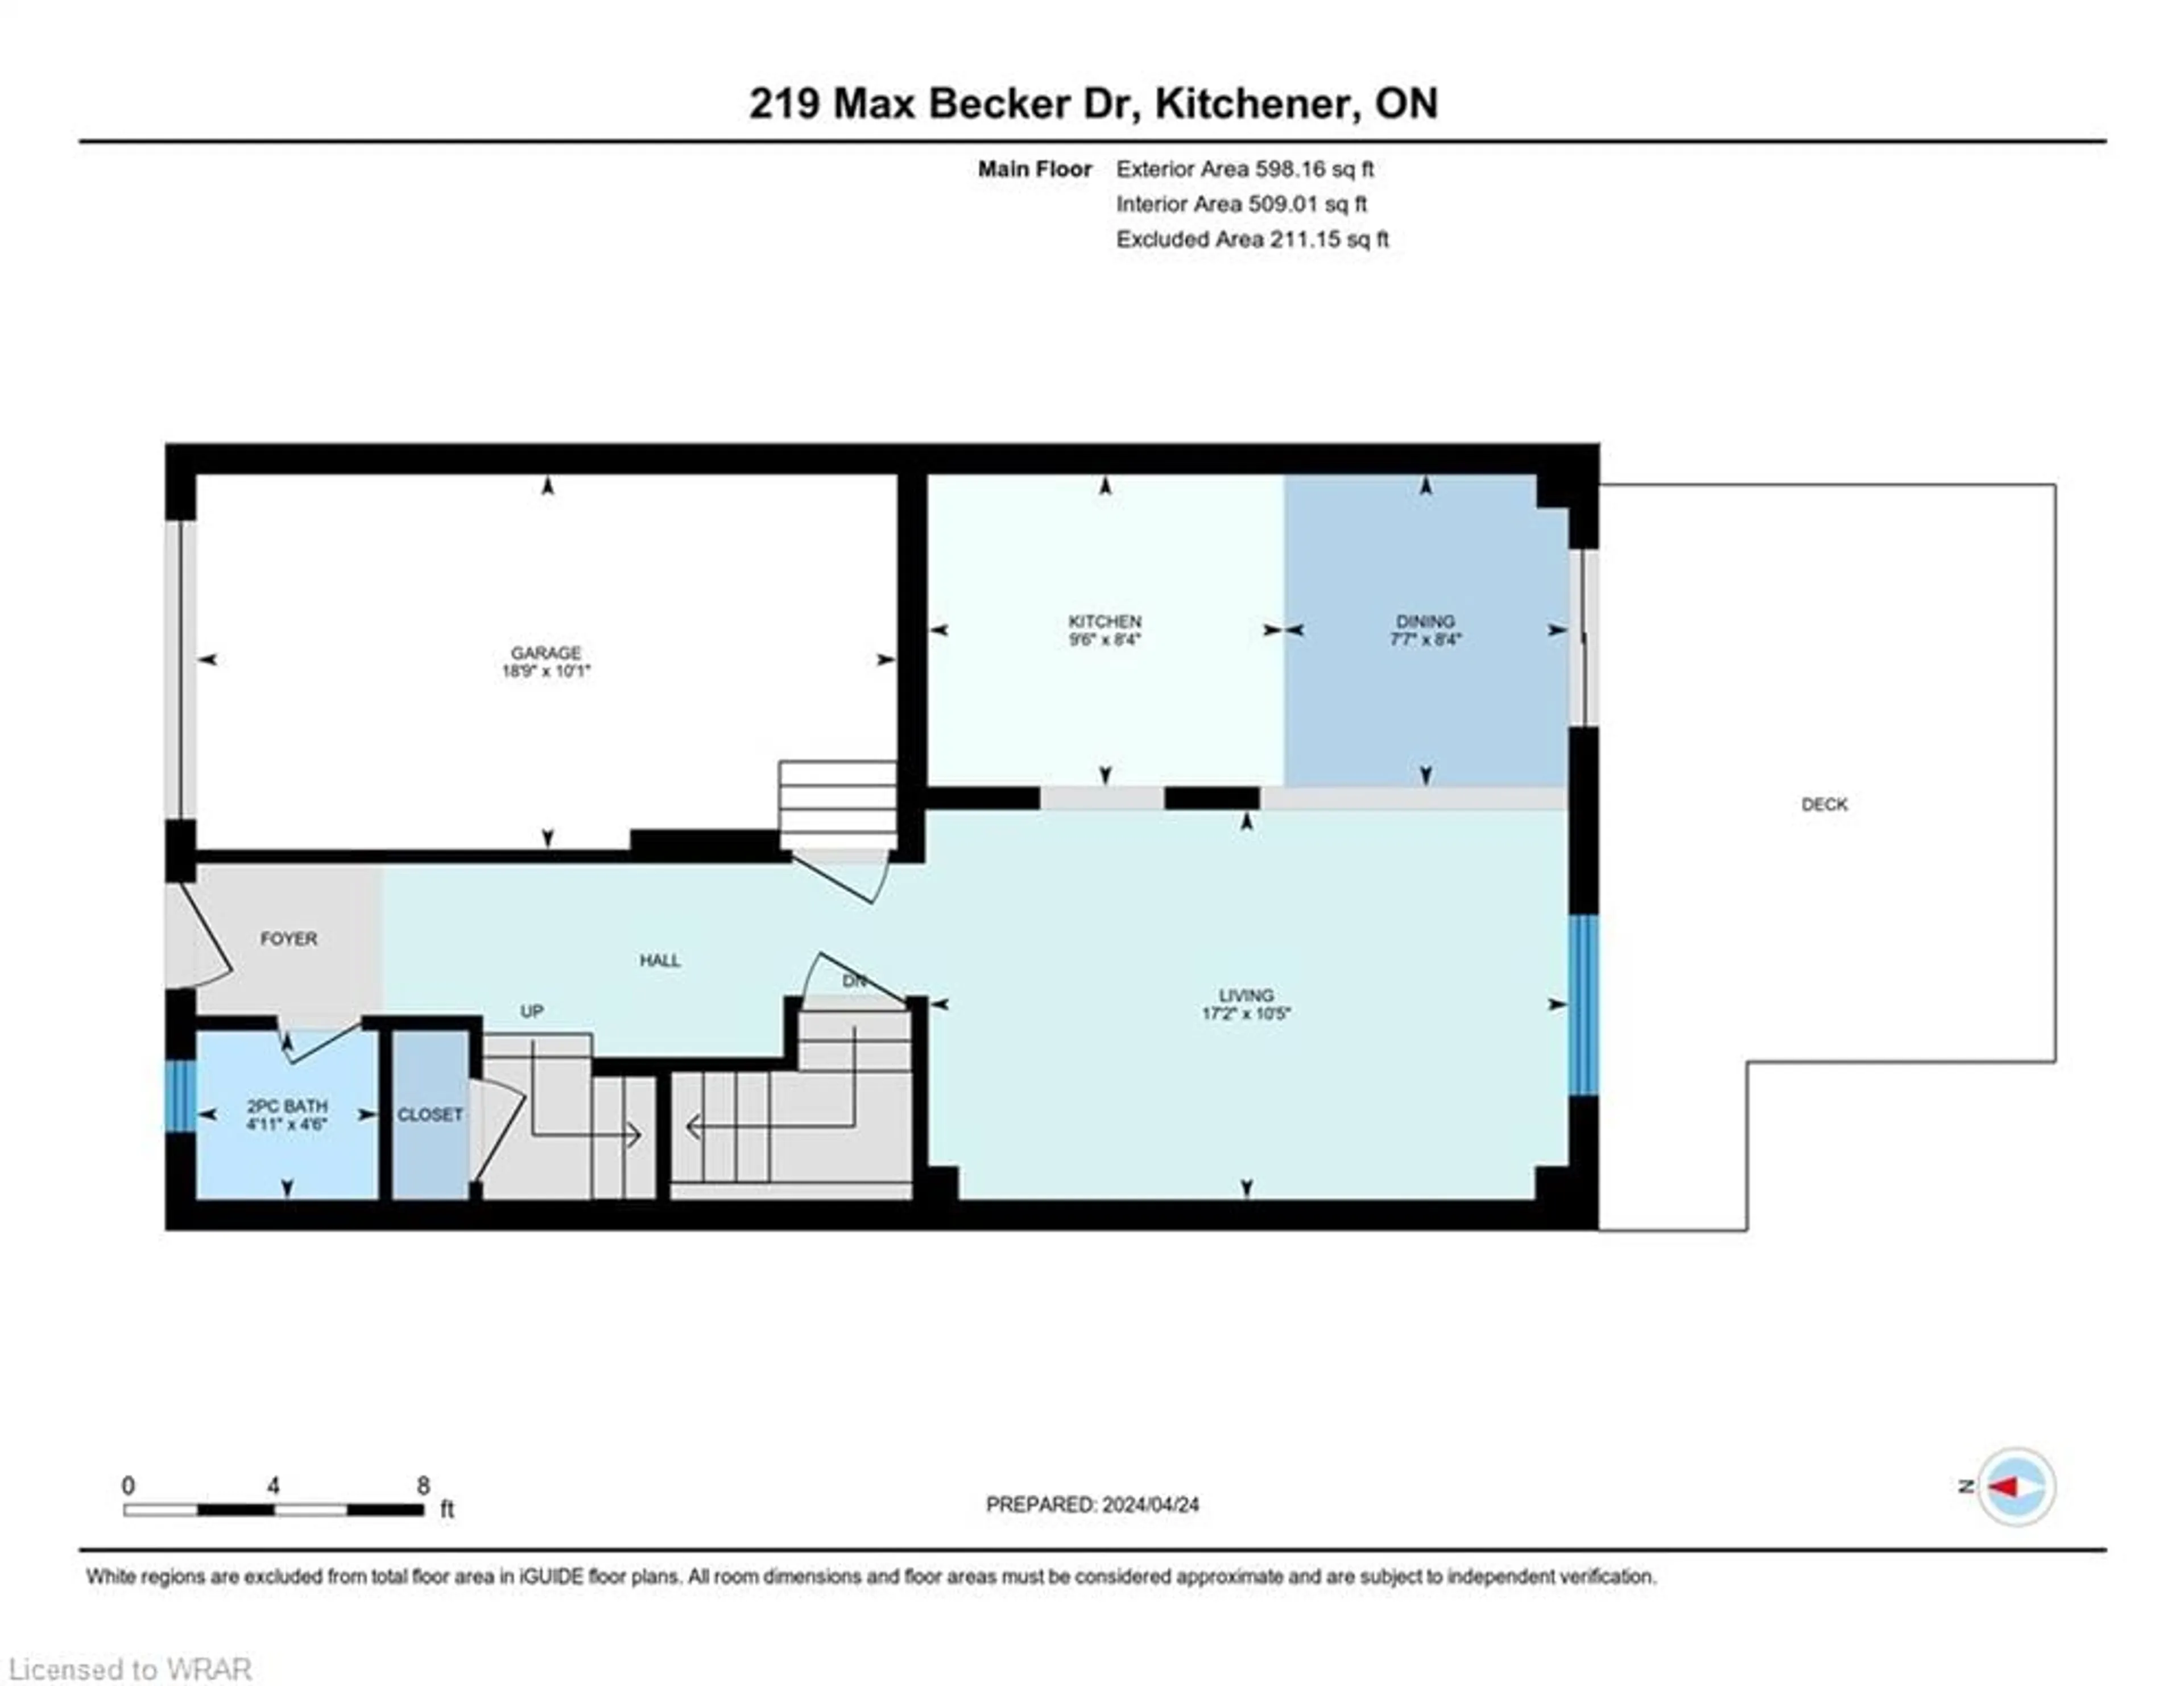 Floor plan for 219 Max Becker Dr, Kitchener Ontario N2E 4G2